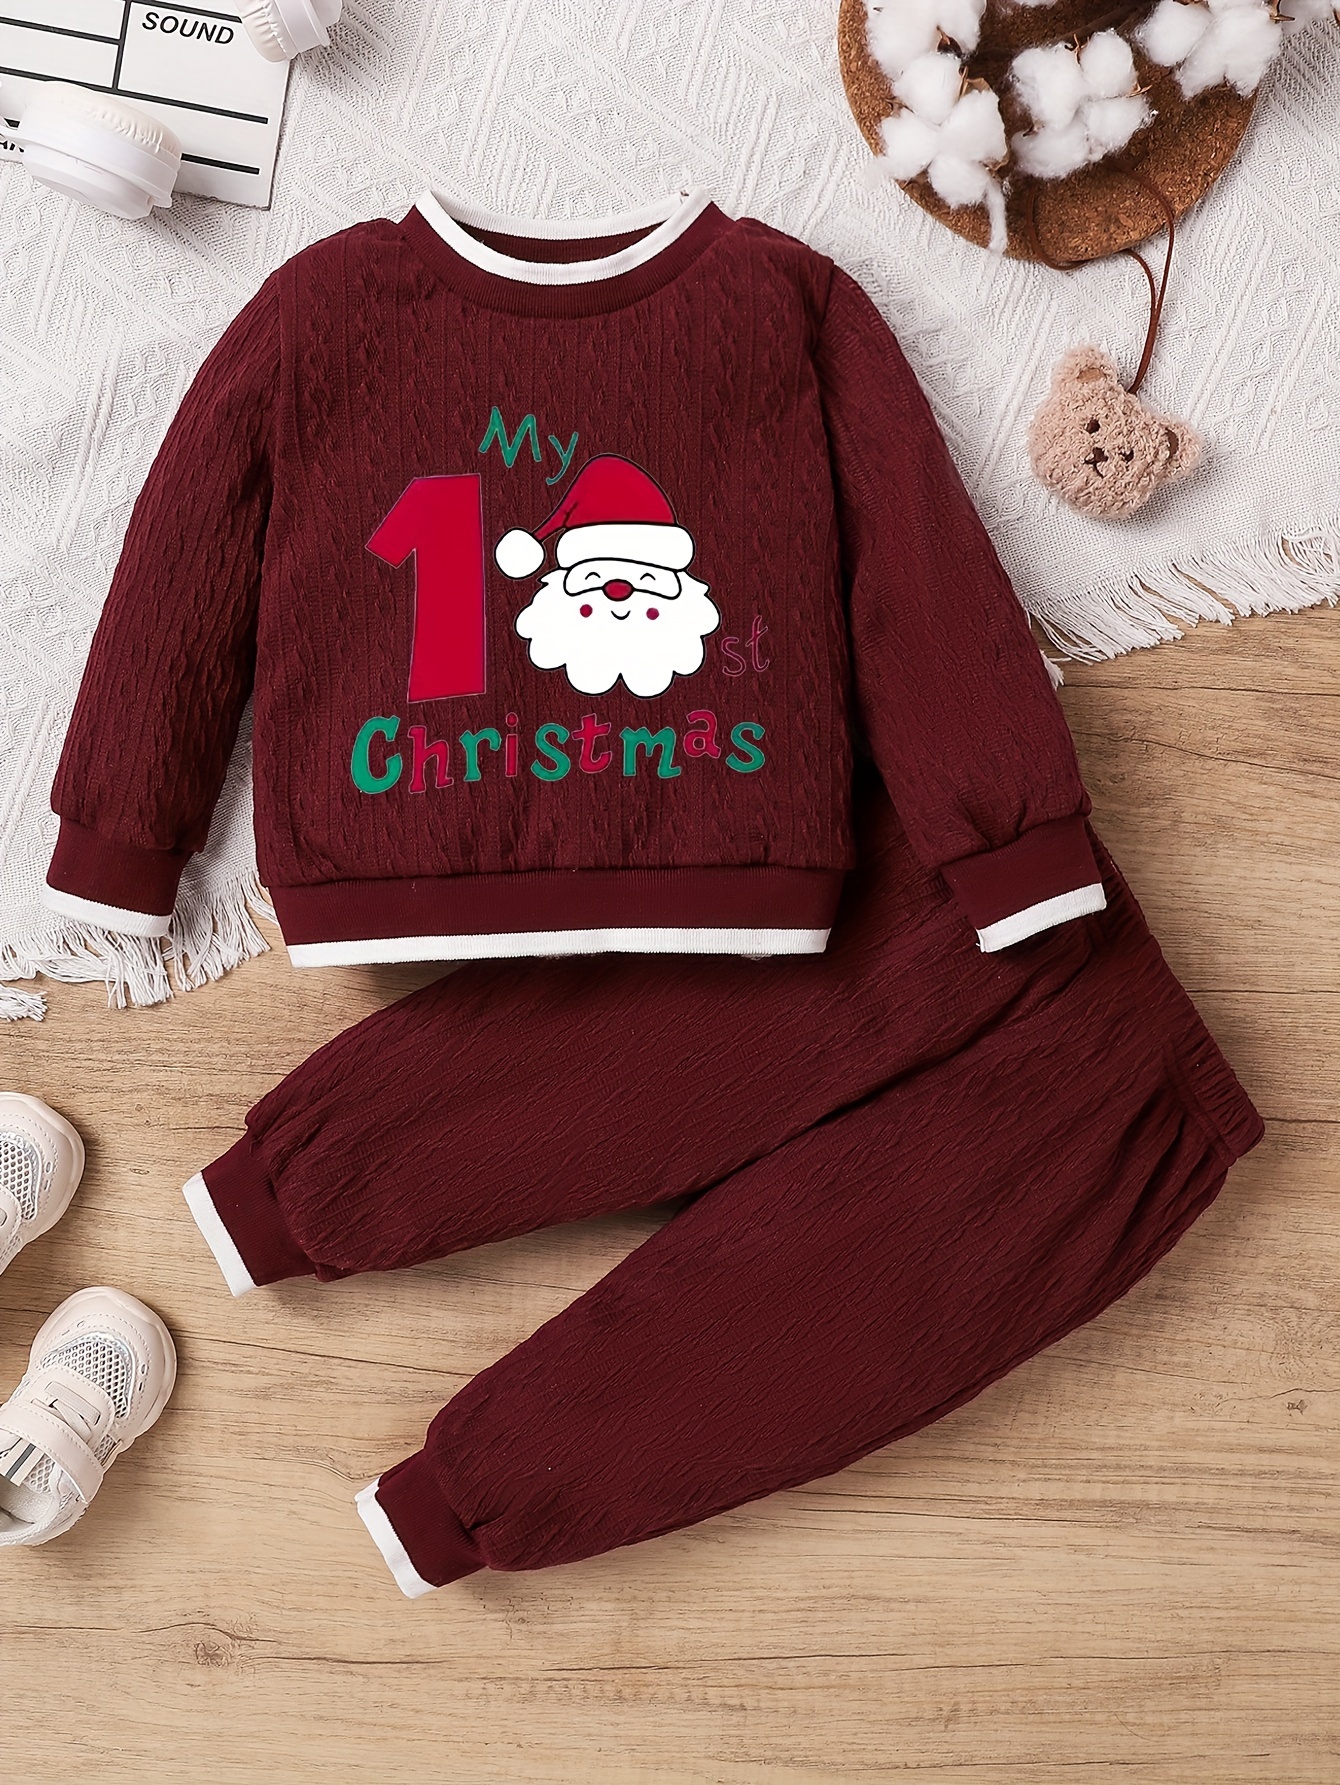 Ensemble de vêtements de jeu 2 pièces unisexe pour bébé à manches longues  My First Christmas Body et pantalon en tricot rayé